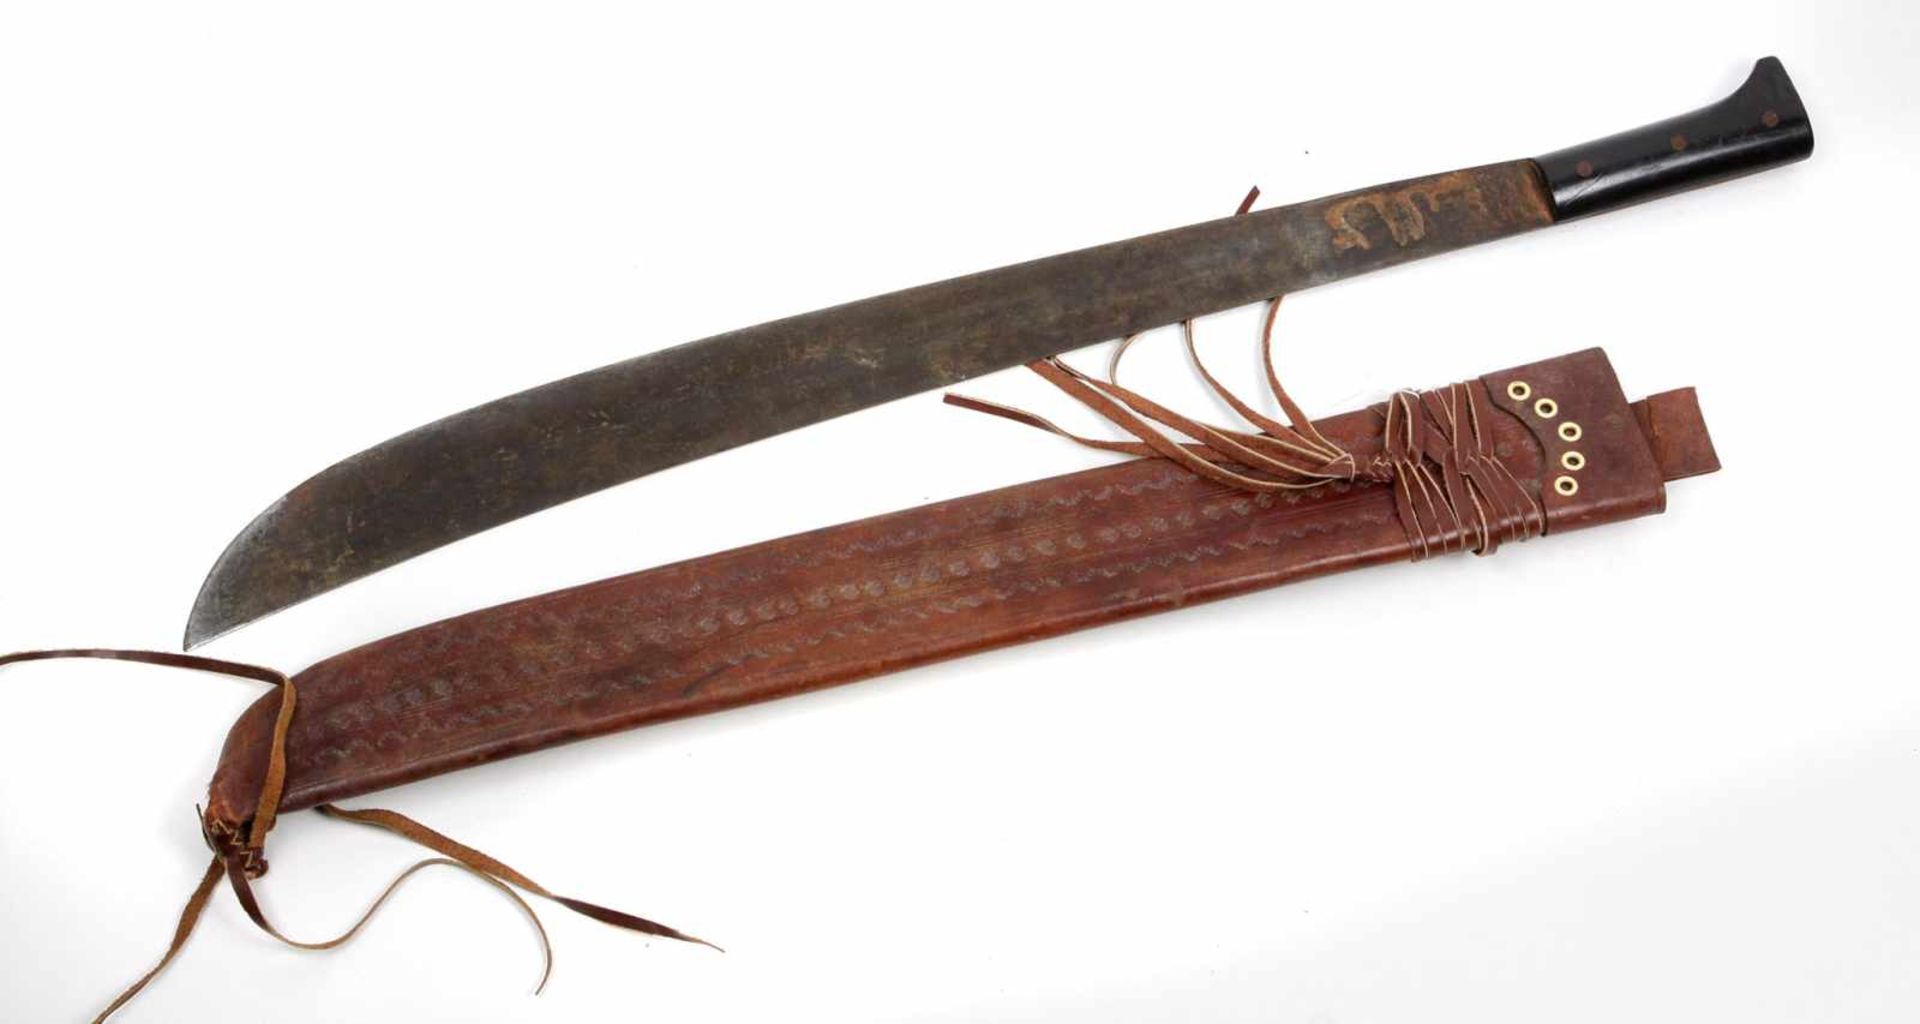 Machete mit Lederscheidegroße Eisenklinge von ca. 3,5 bis 5,5 cm breite, an kutzem schwarzem